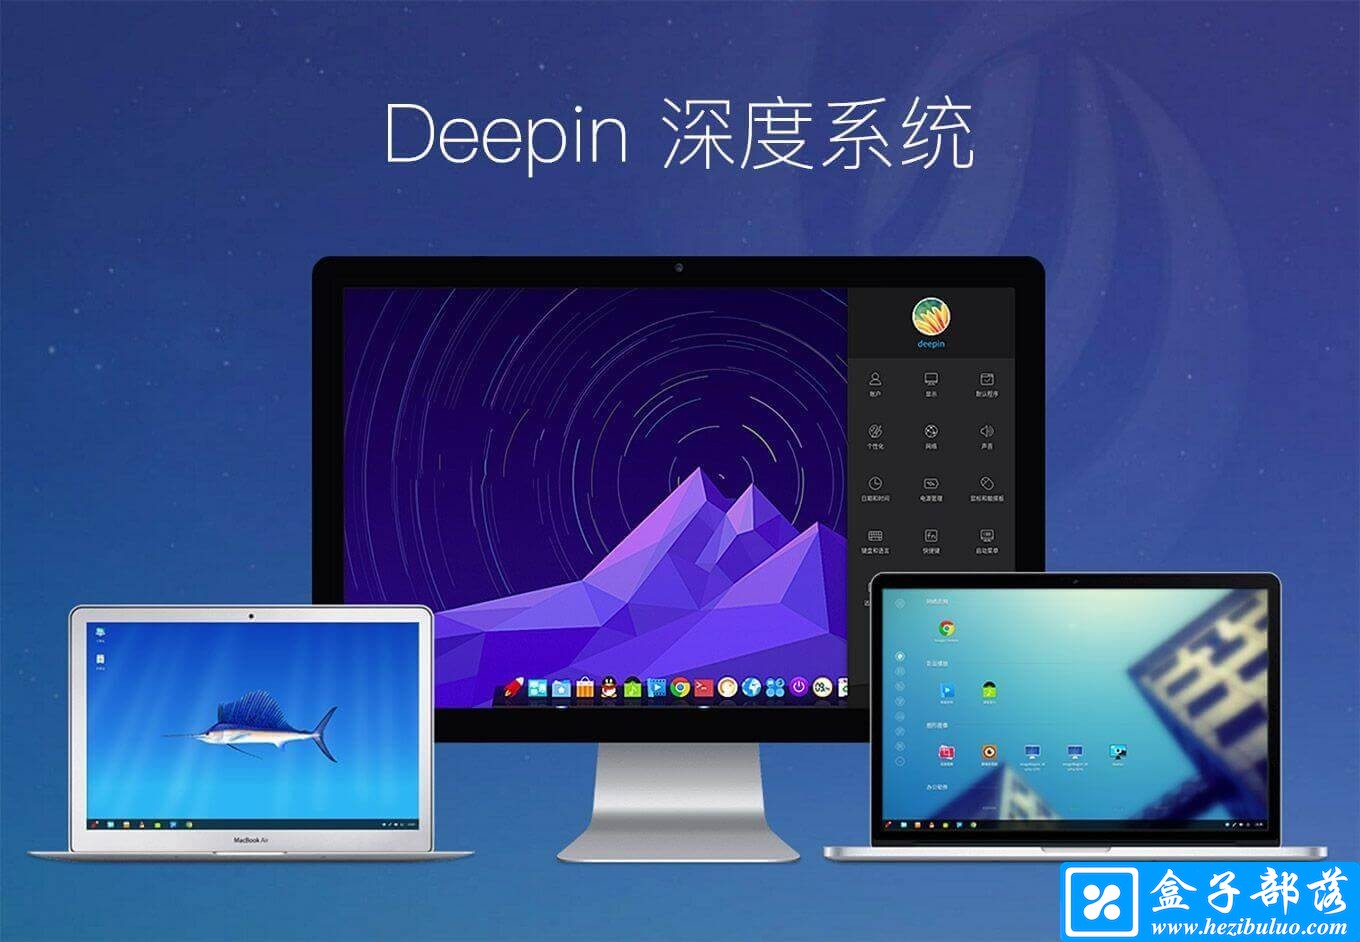 深度 Deepin 15.10.1 - 适合国人学习使用的的国产精美 Linux 系统